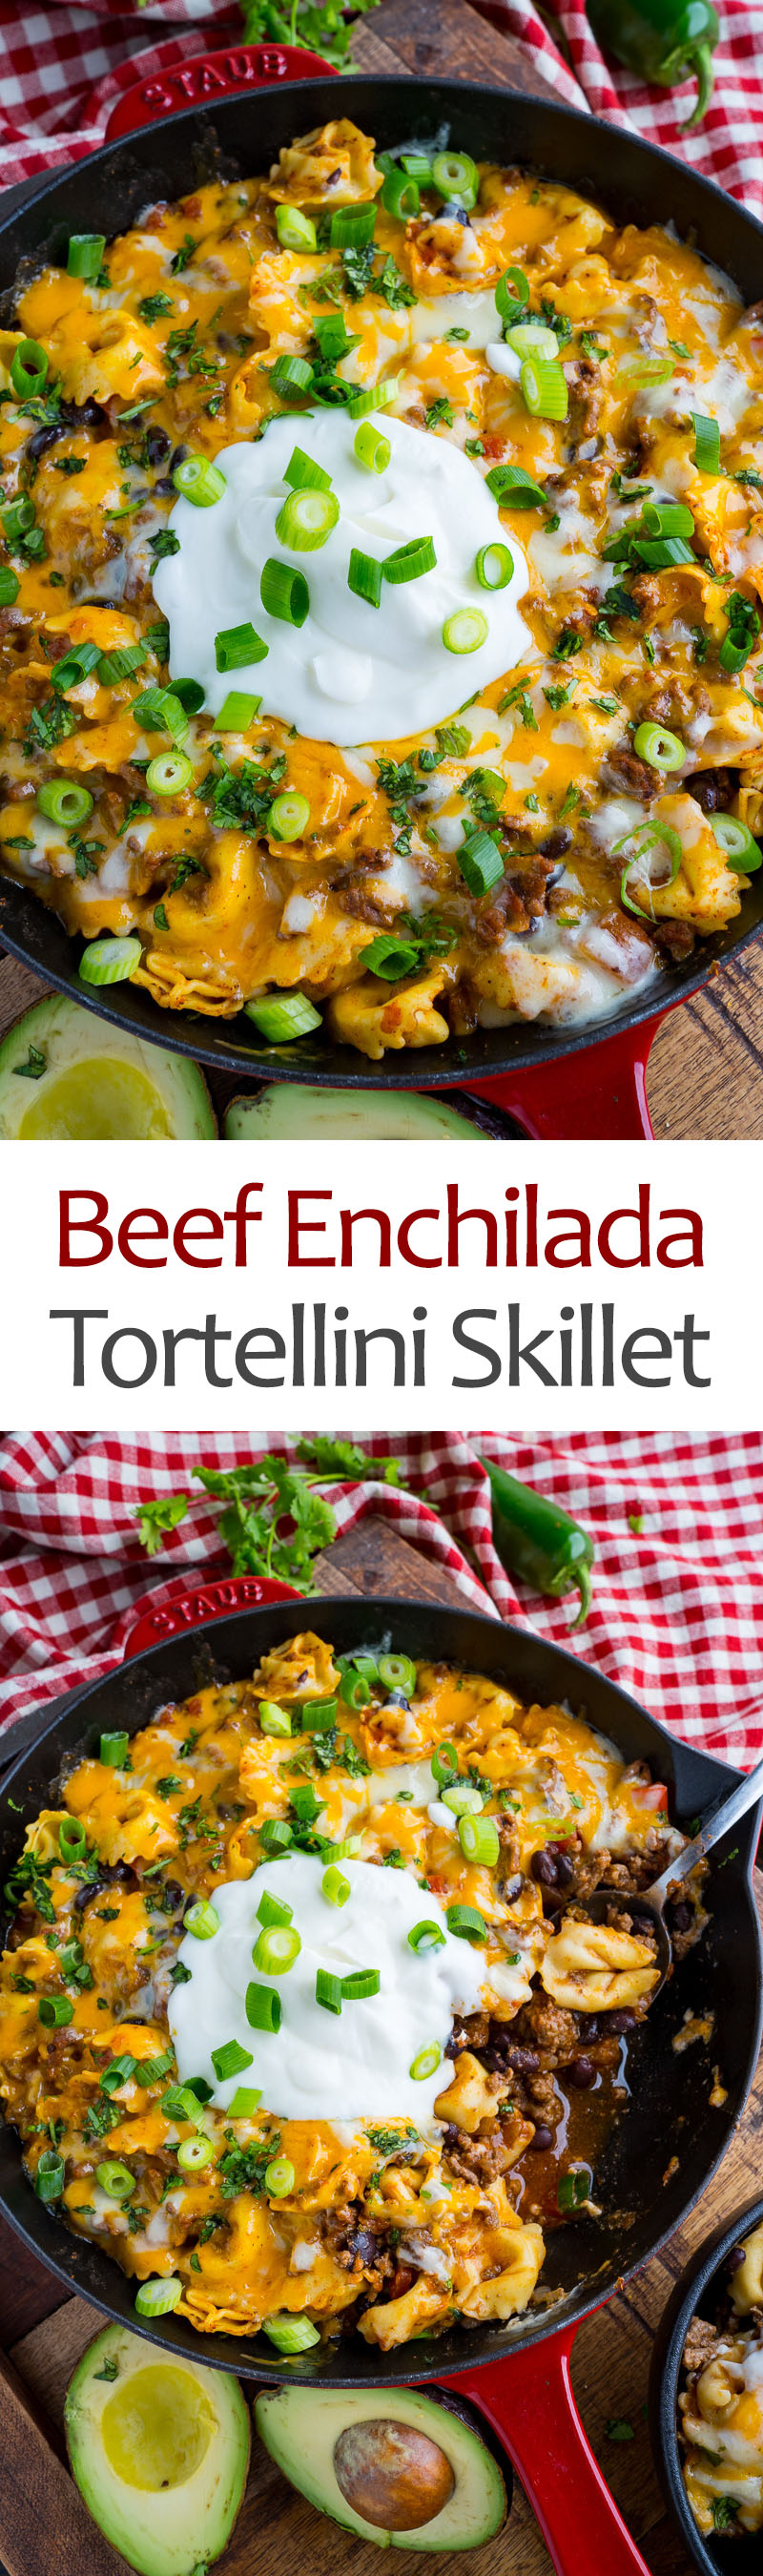 Cheesy Beef Enchilada Tortellini Skillet